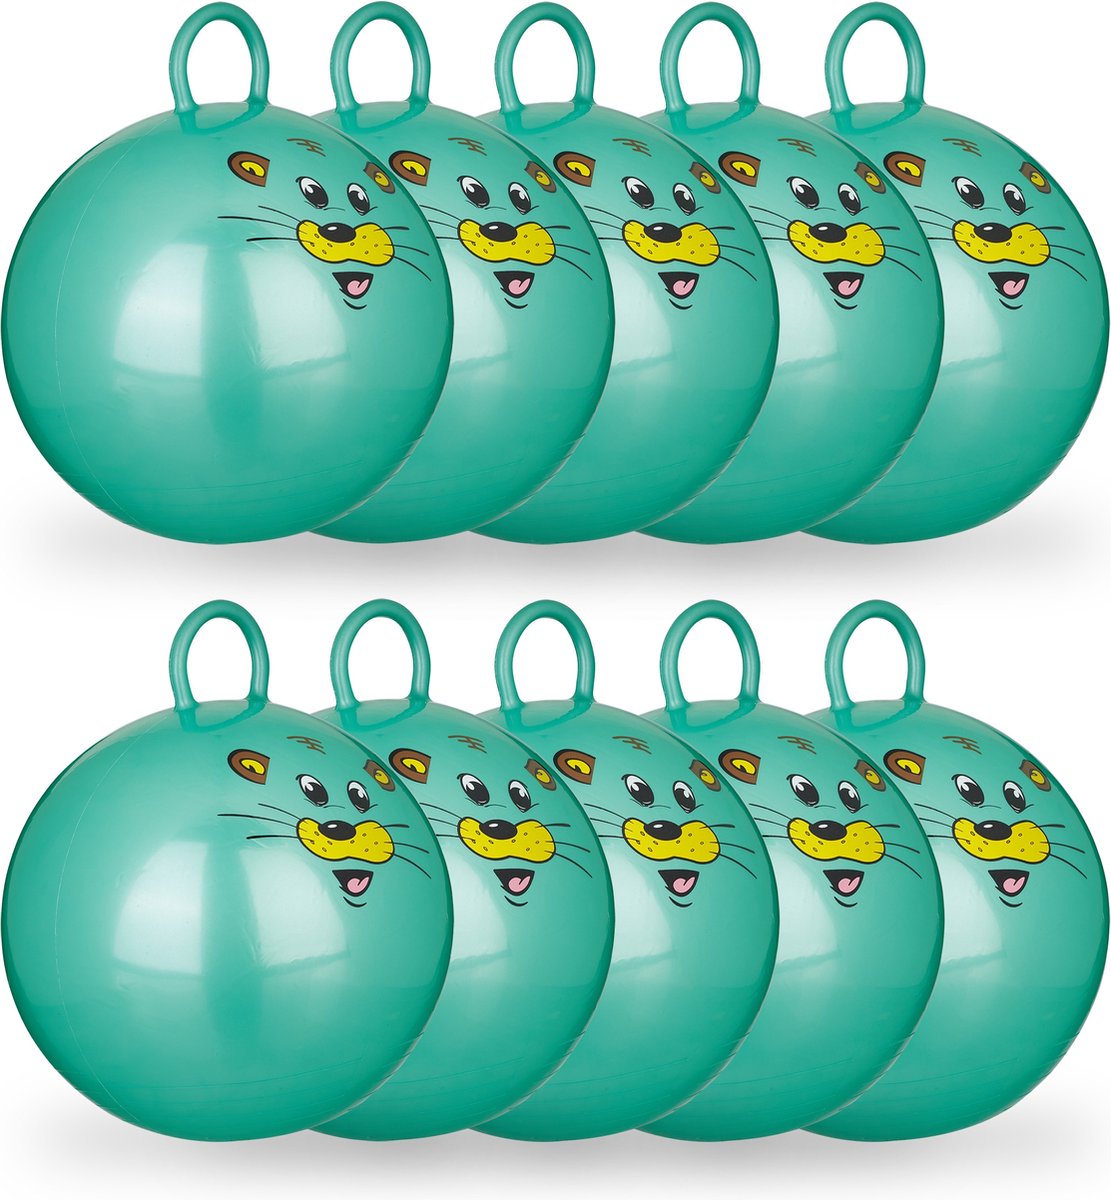 Relaxdays 10 x skippybal in set - voor kinderen - muis design - springbal - groen